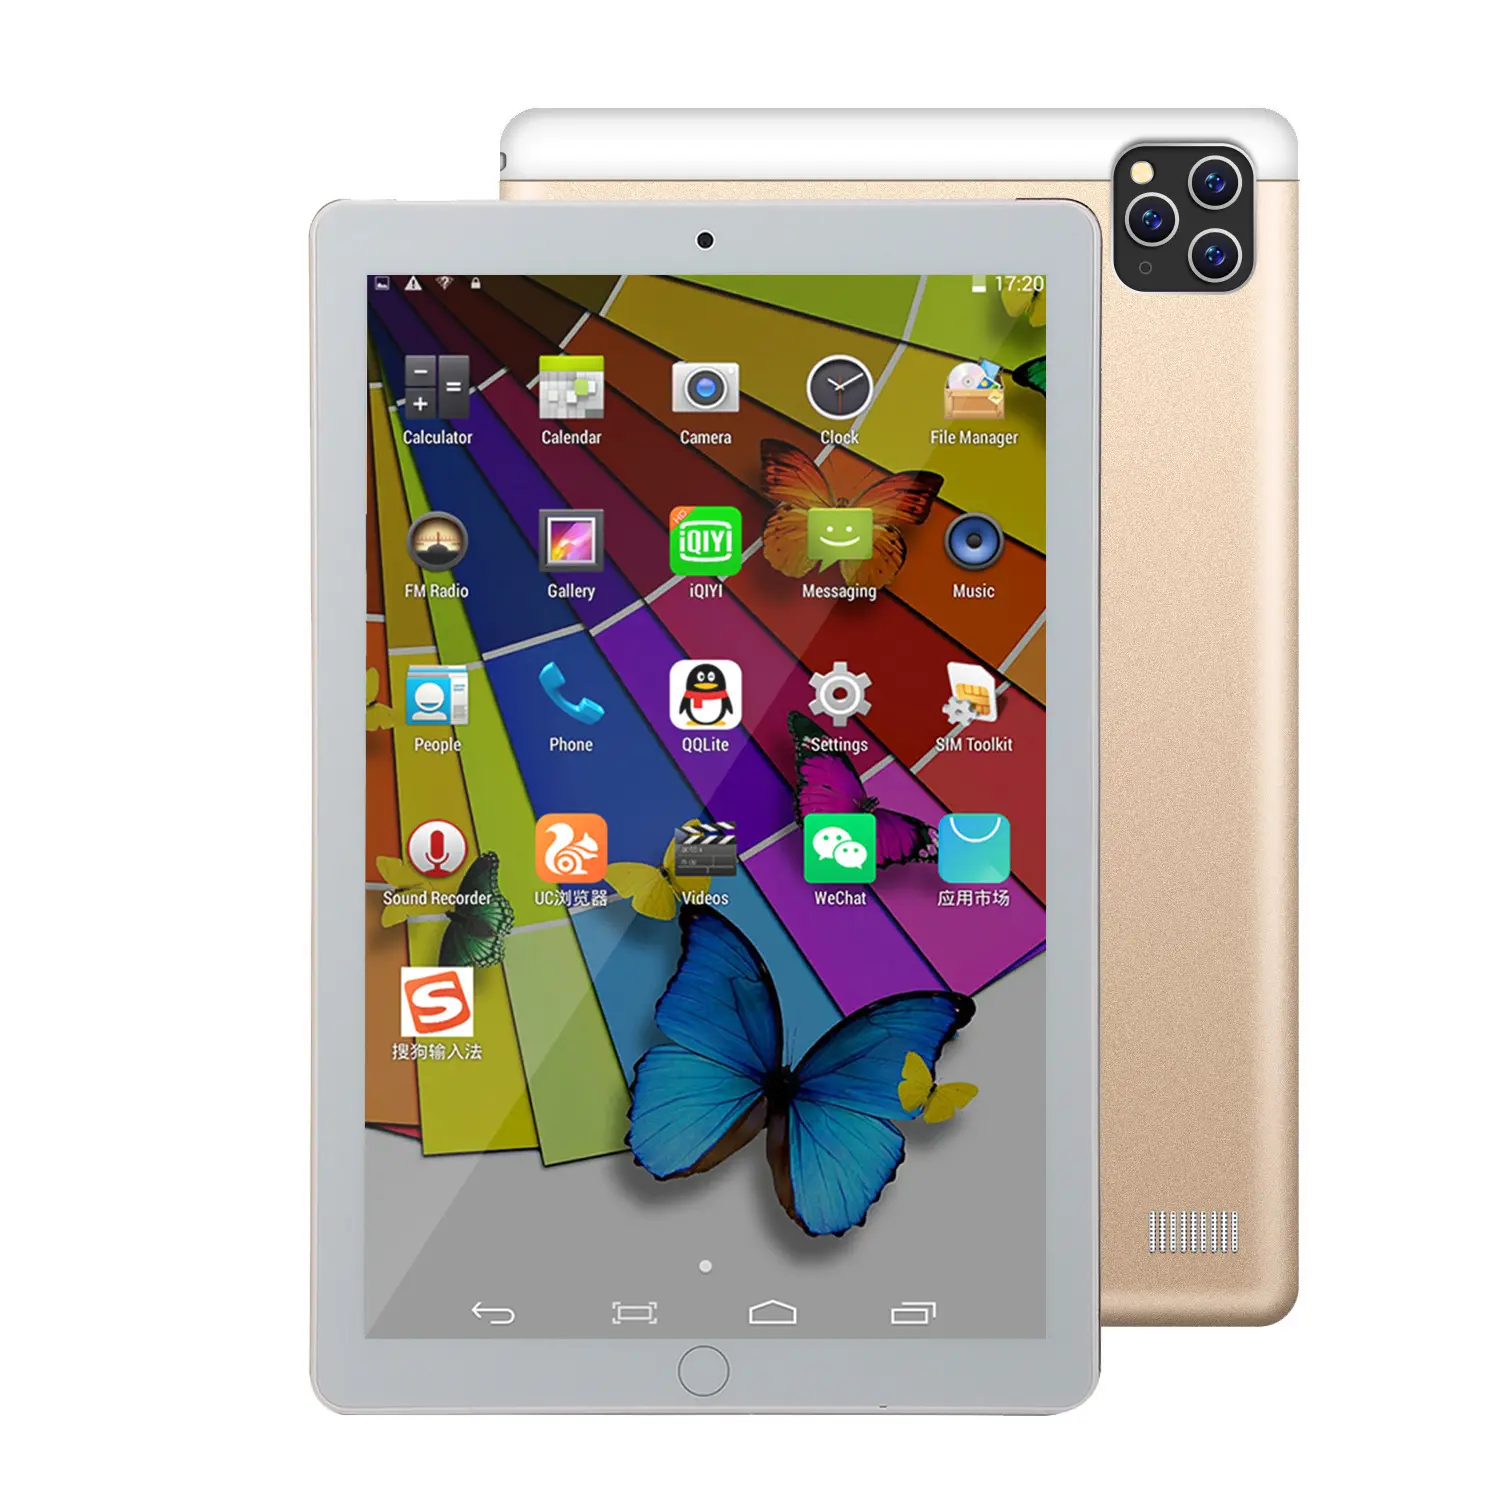 OEM barato Android 8.1 Tab 10 polegadas celular Quad Core Tablet Pc com 3G telefone chamando comprimidos Dual Sim Card Slot Wifi